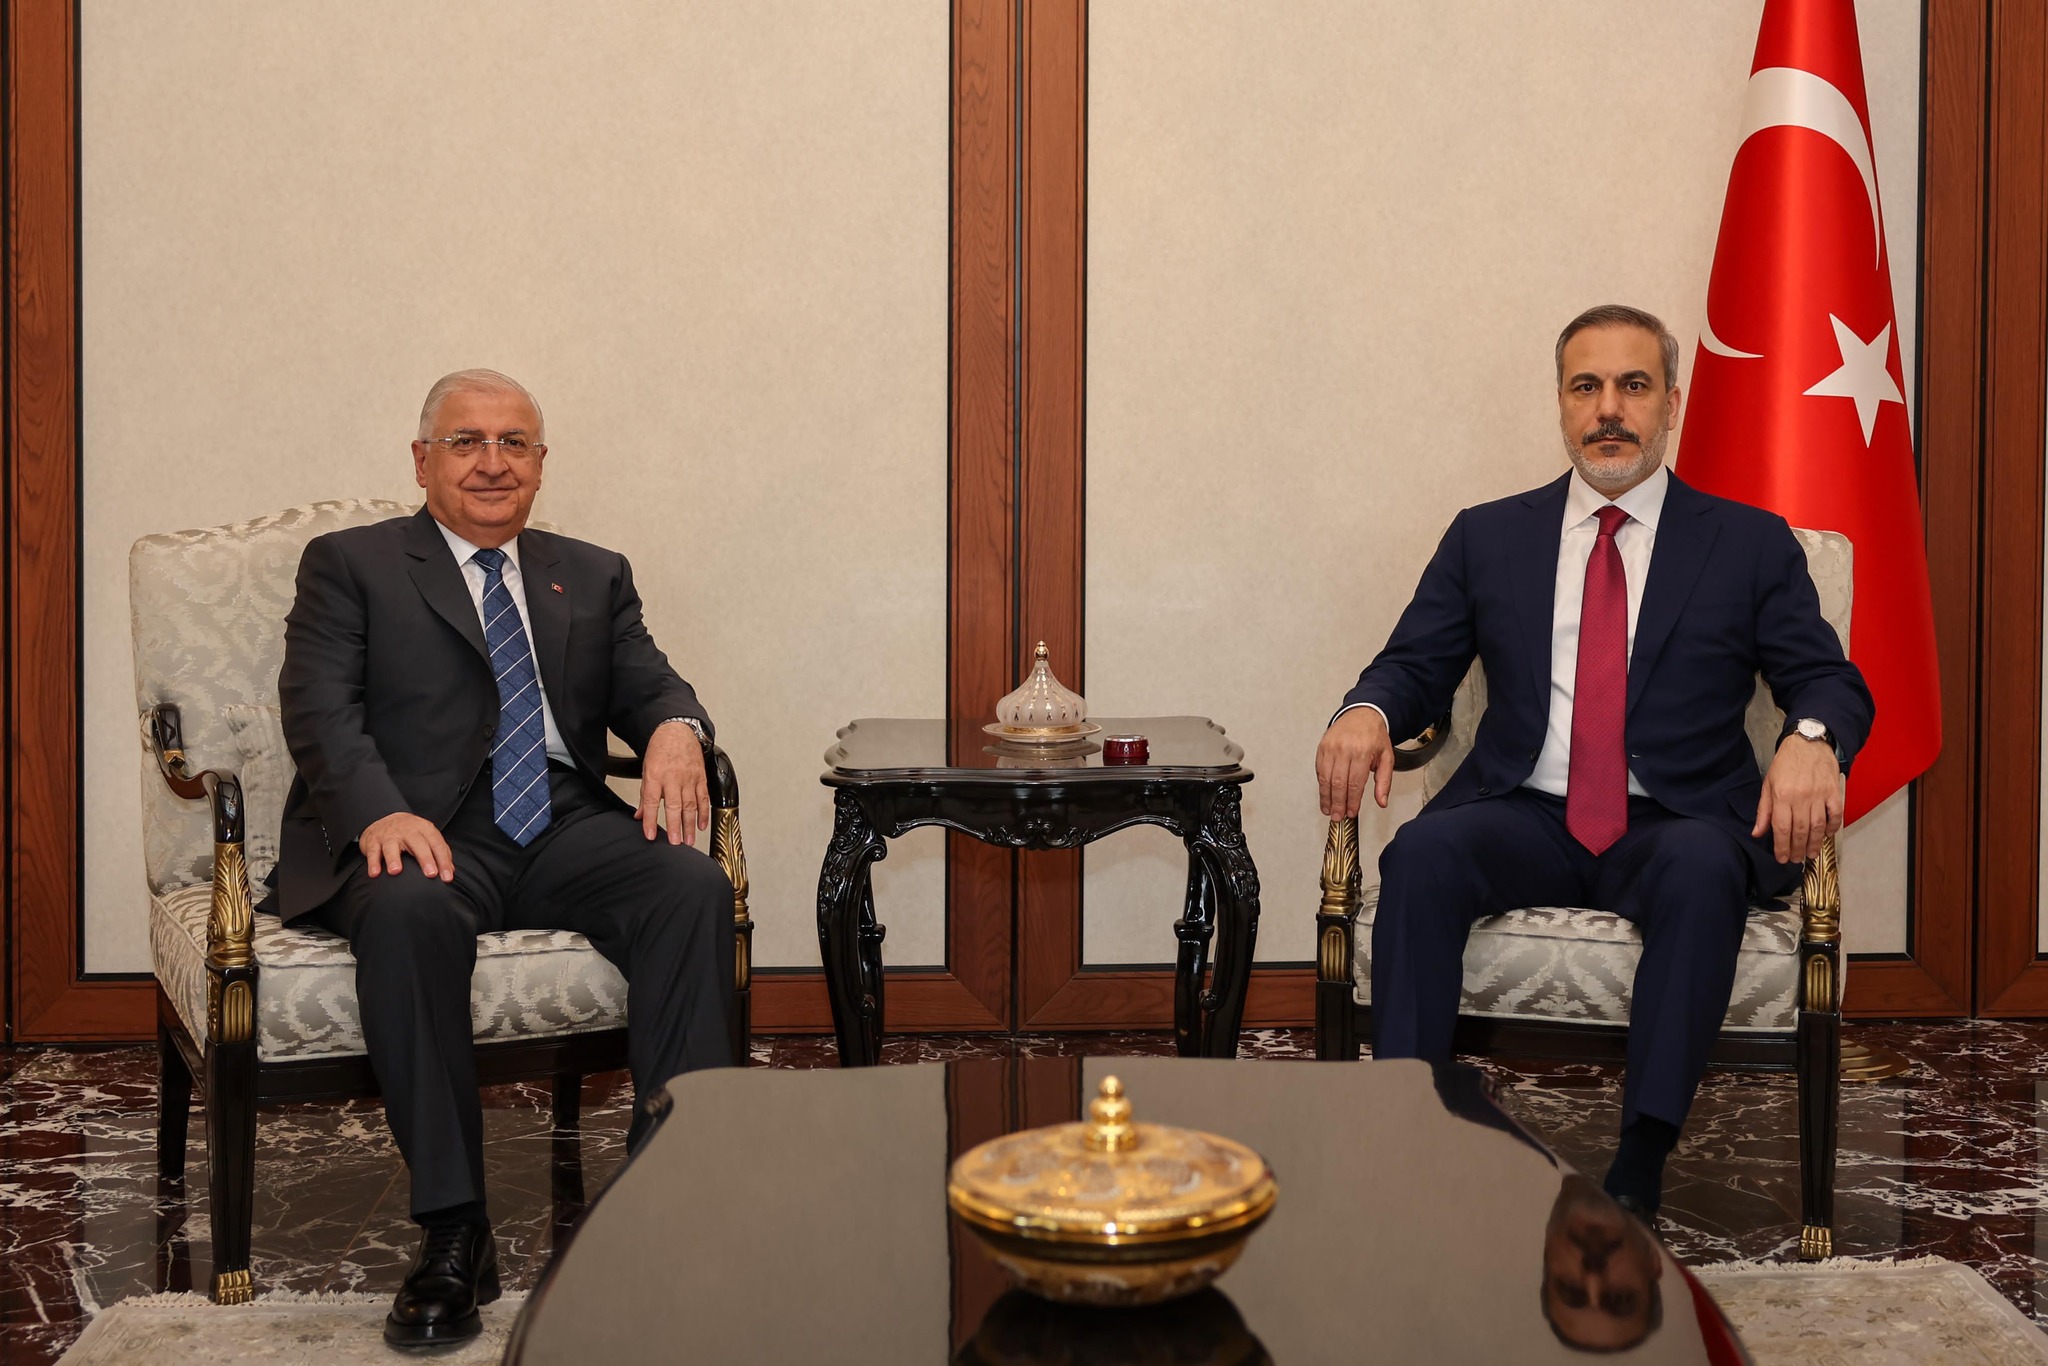 Milli Savunma Bakanı Hakan Fidan, Dışişleri Bakanı ile önemli görüşmeler gerçekleştirdi